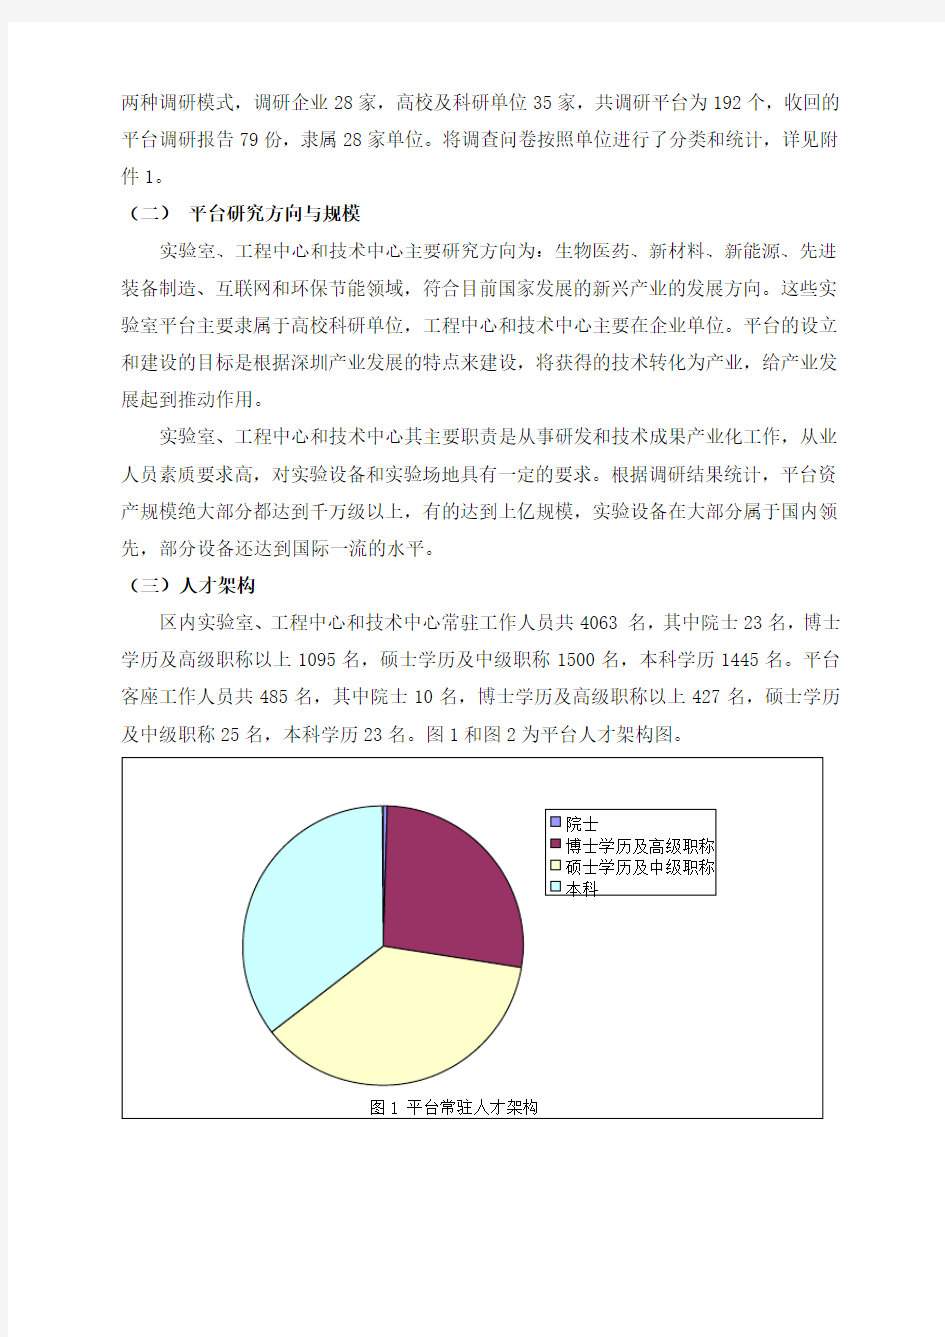 深圳市南山区科技公共平台(含高校与科研机构科研资源)基本情况调研